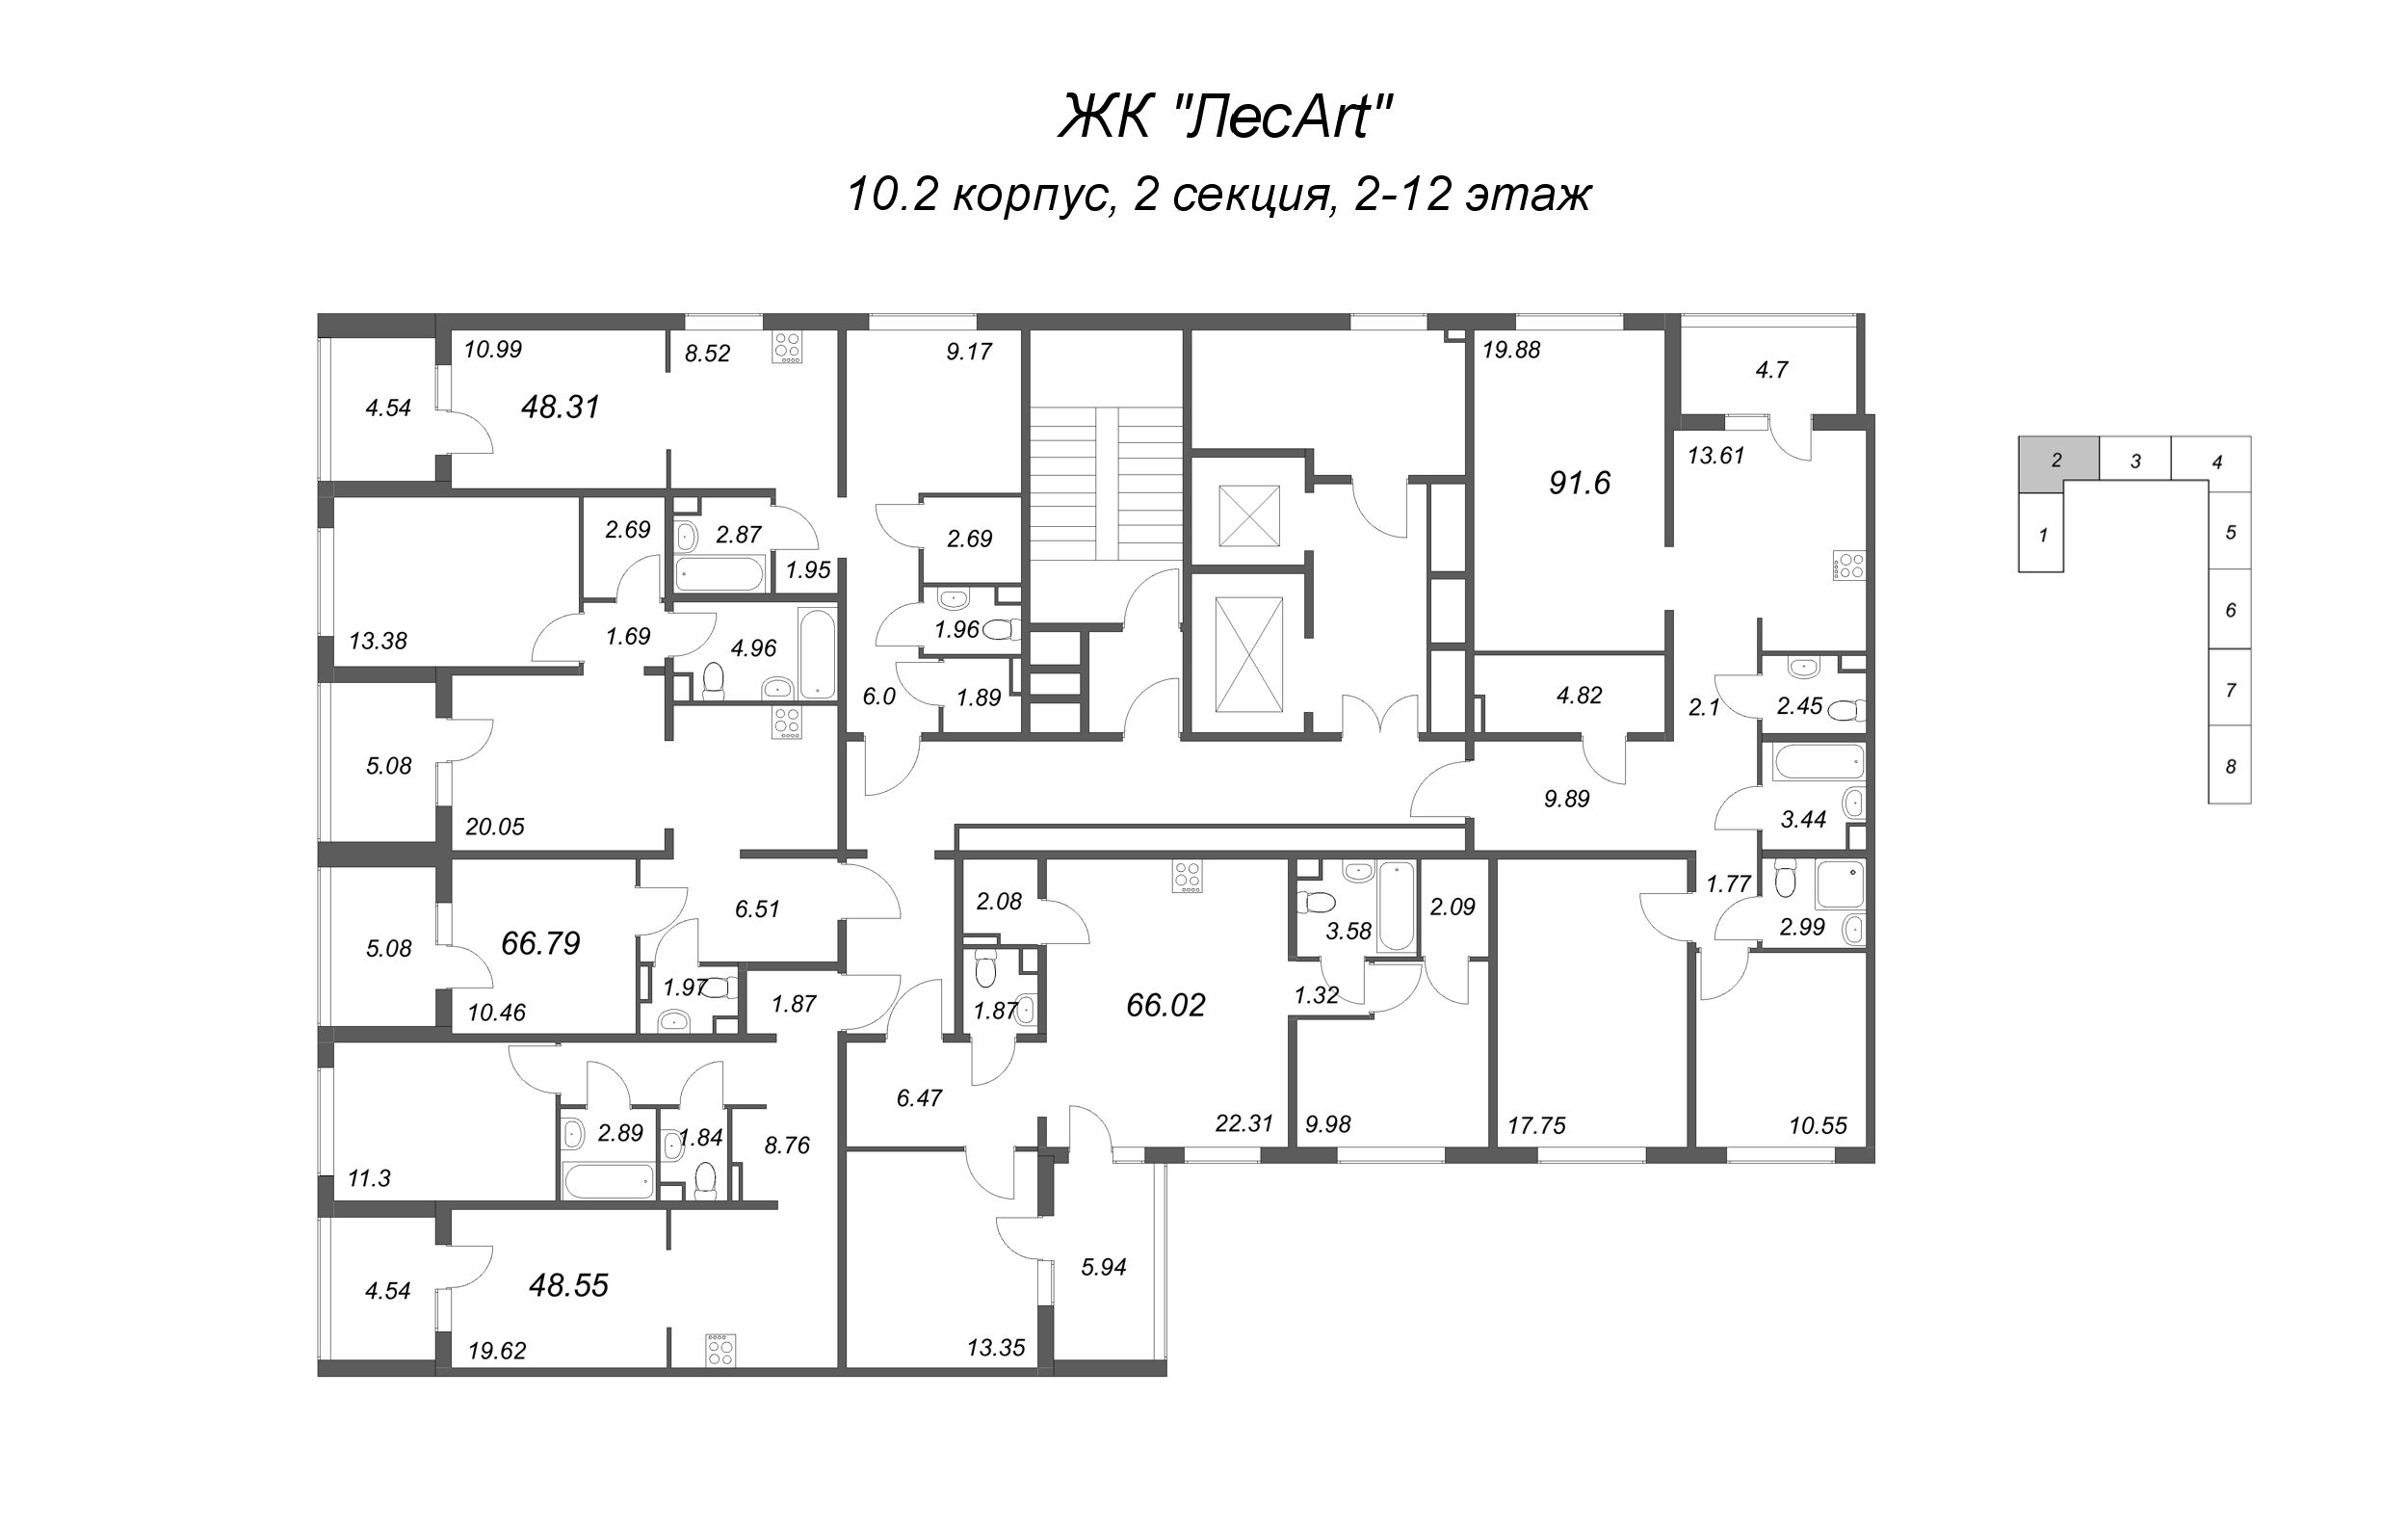 3-комнатная квартира, 91.6 м² в ЖК "ЛесArt" - планировка этажа